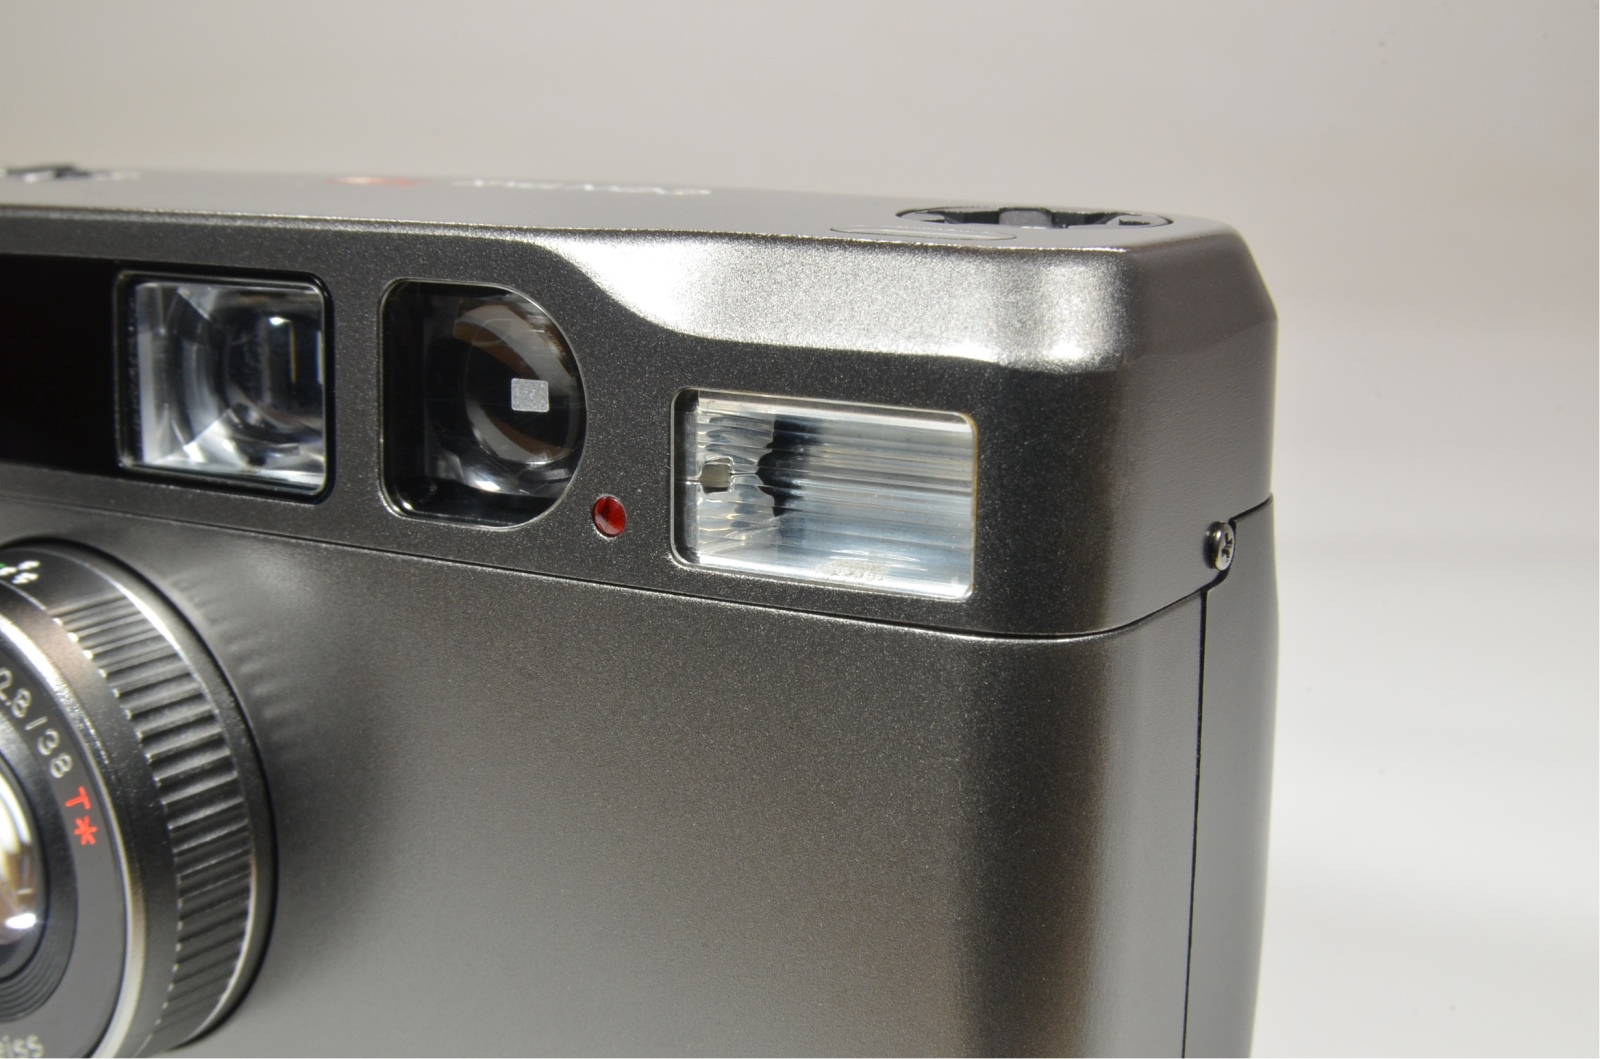 contax t2 data back titanium black p&s 35mm film camera